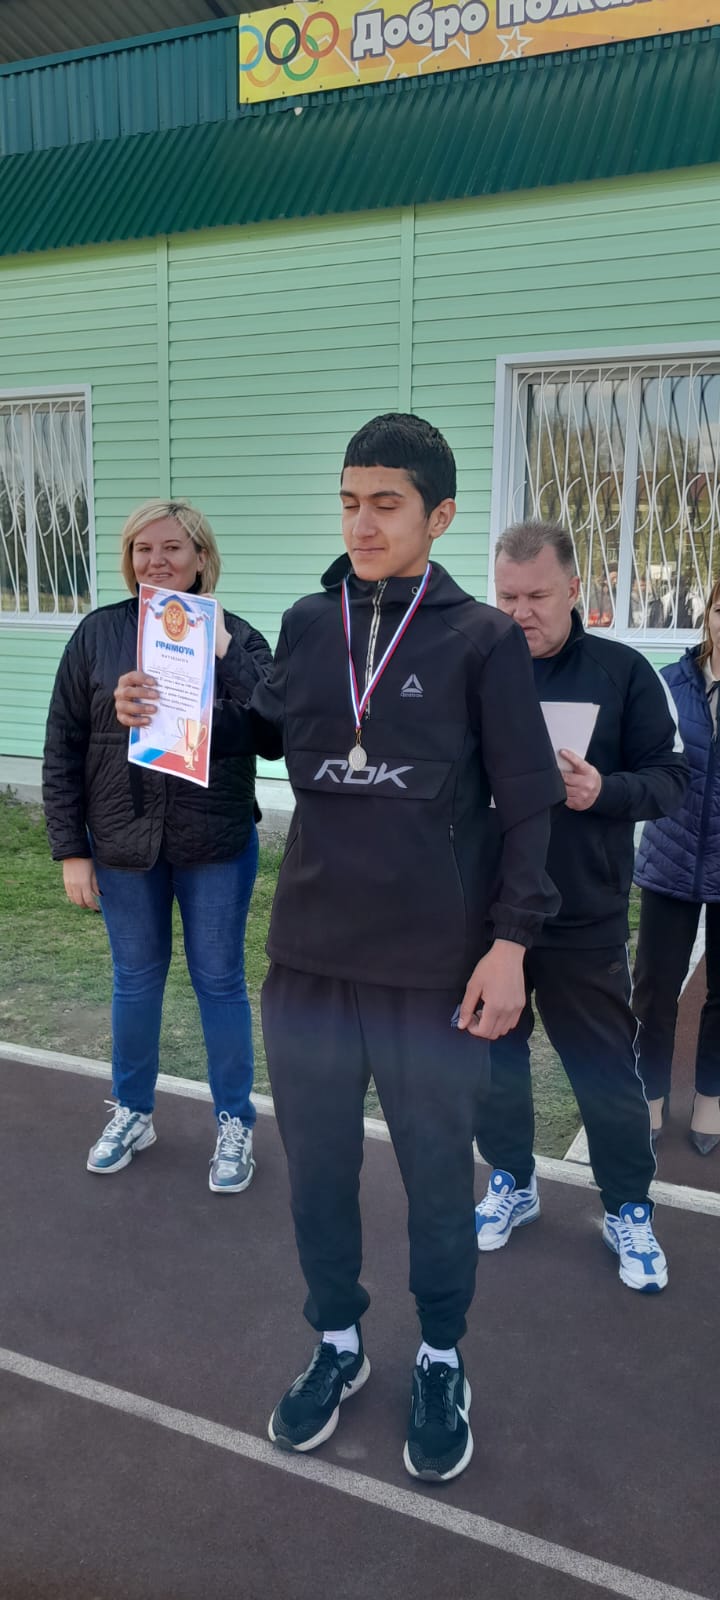 Районные соревнования по легкой атлетике в зачет спартакиады школьников среди учащихся Троицкого района.